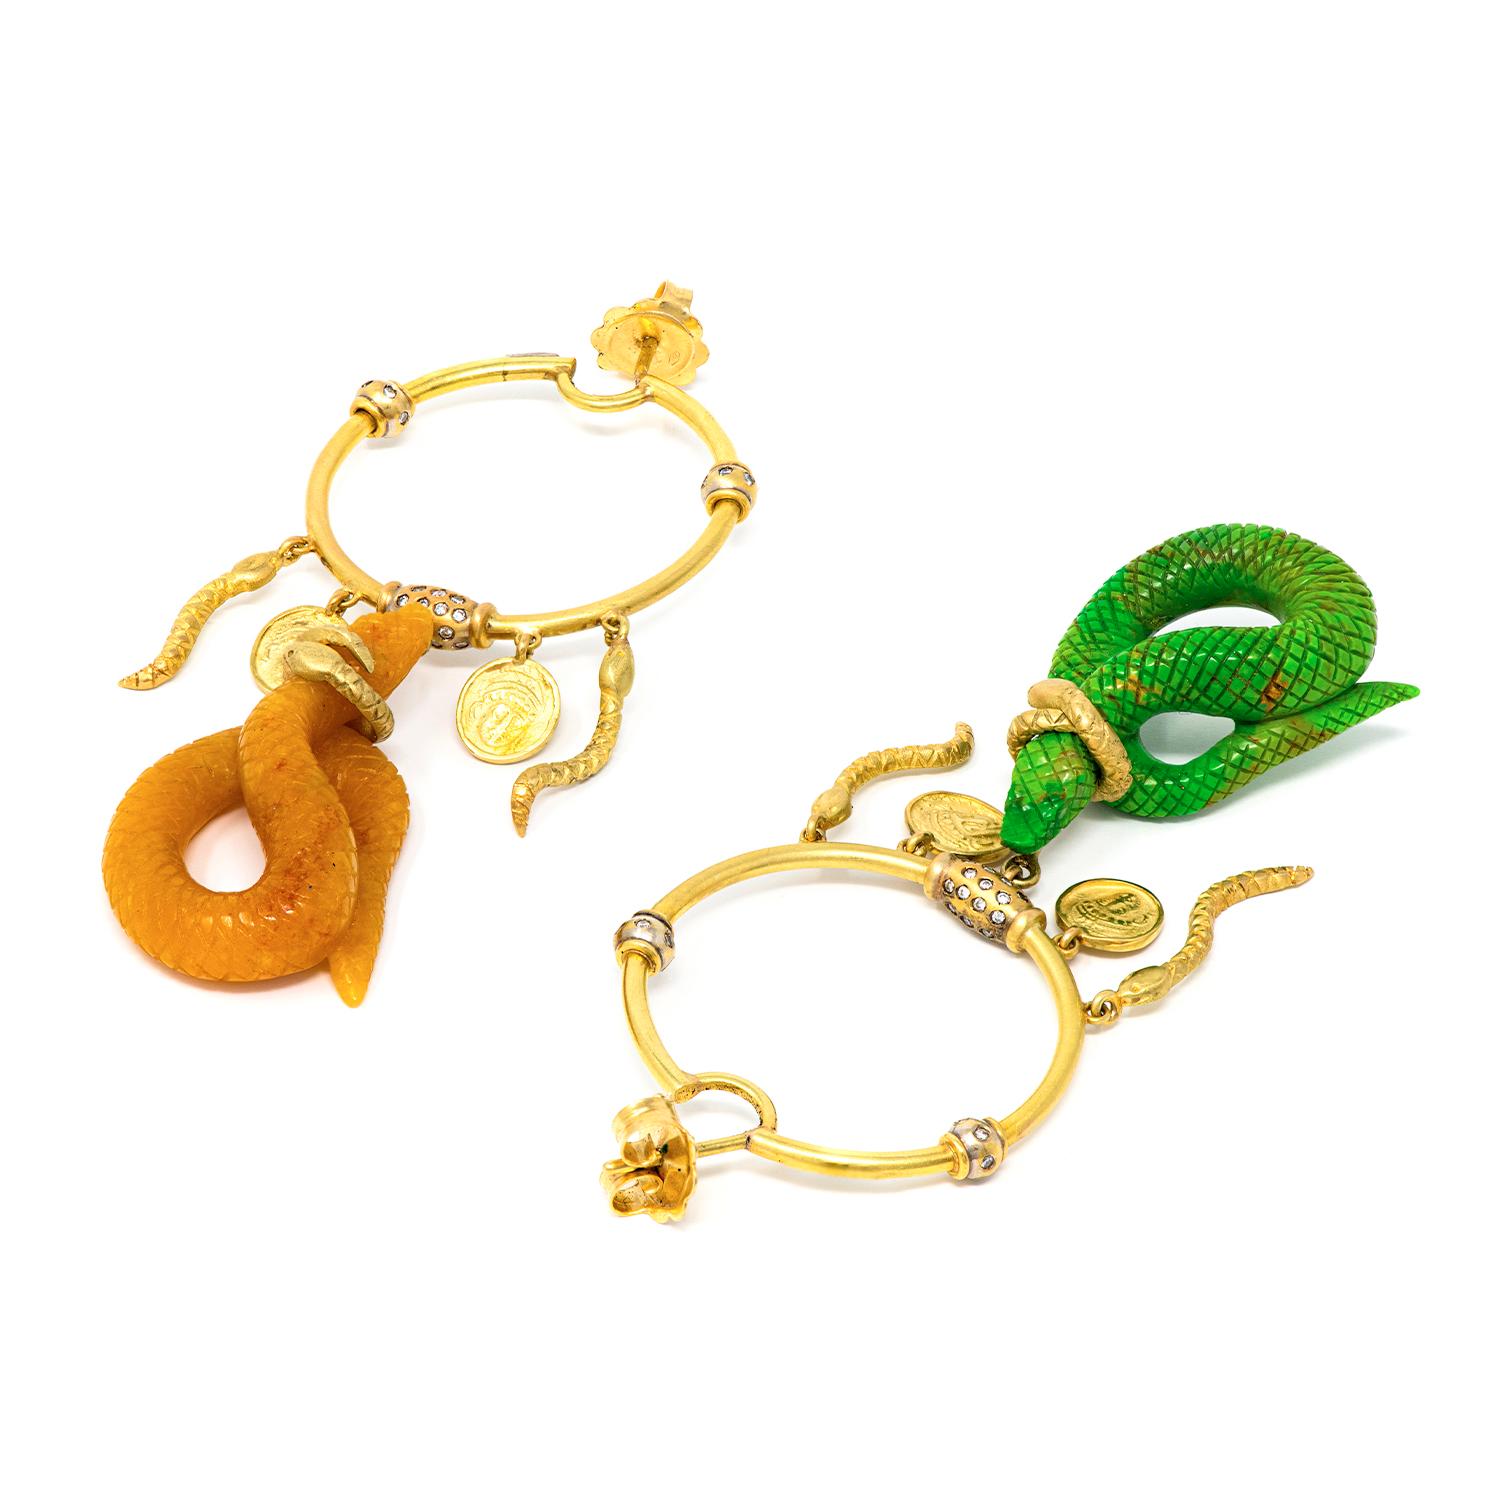 Gold-Ohrringe mit Diamanten, Schlangen und grünem Türkis, Jade und Münze, 21. Jahrhundert

Ohrringe aus 18 Karat Gelbgold, Diamanten und 2 Schlangen, geschnitzt aus grünem Türkis und Honigjade.

Wir stellen Ihnen unsere exquisiten Ohrringe aus der